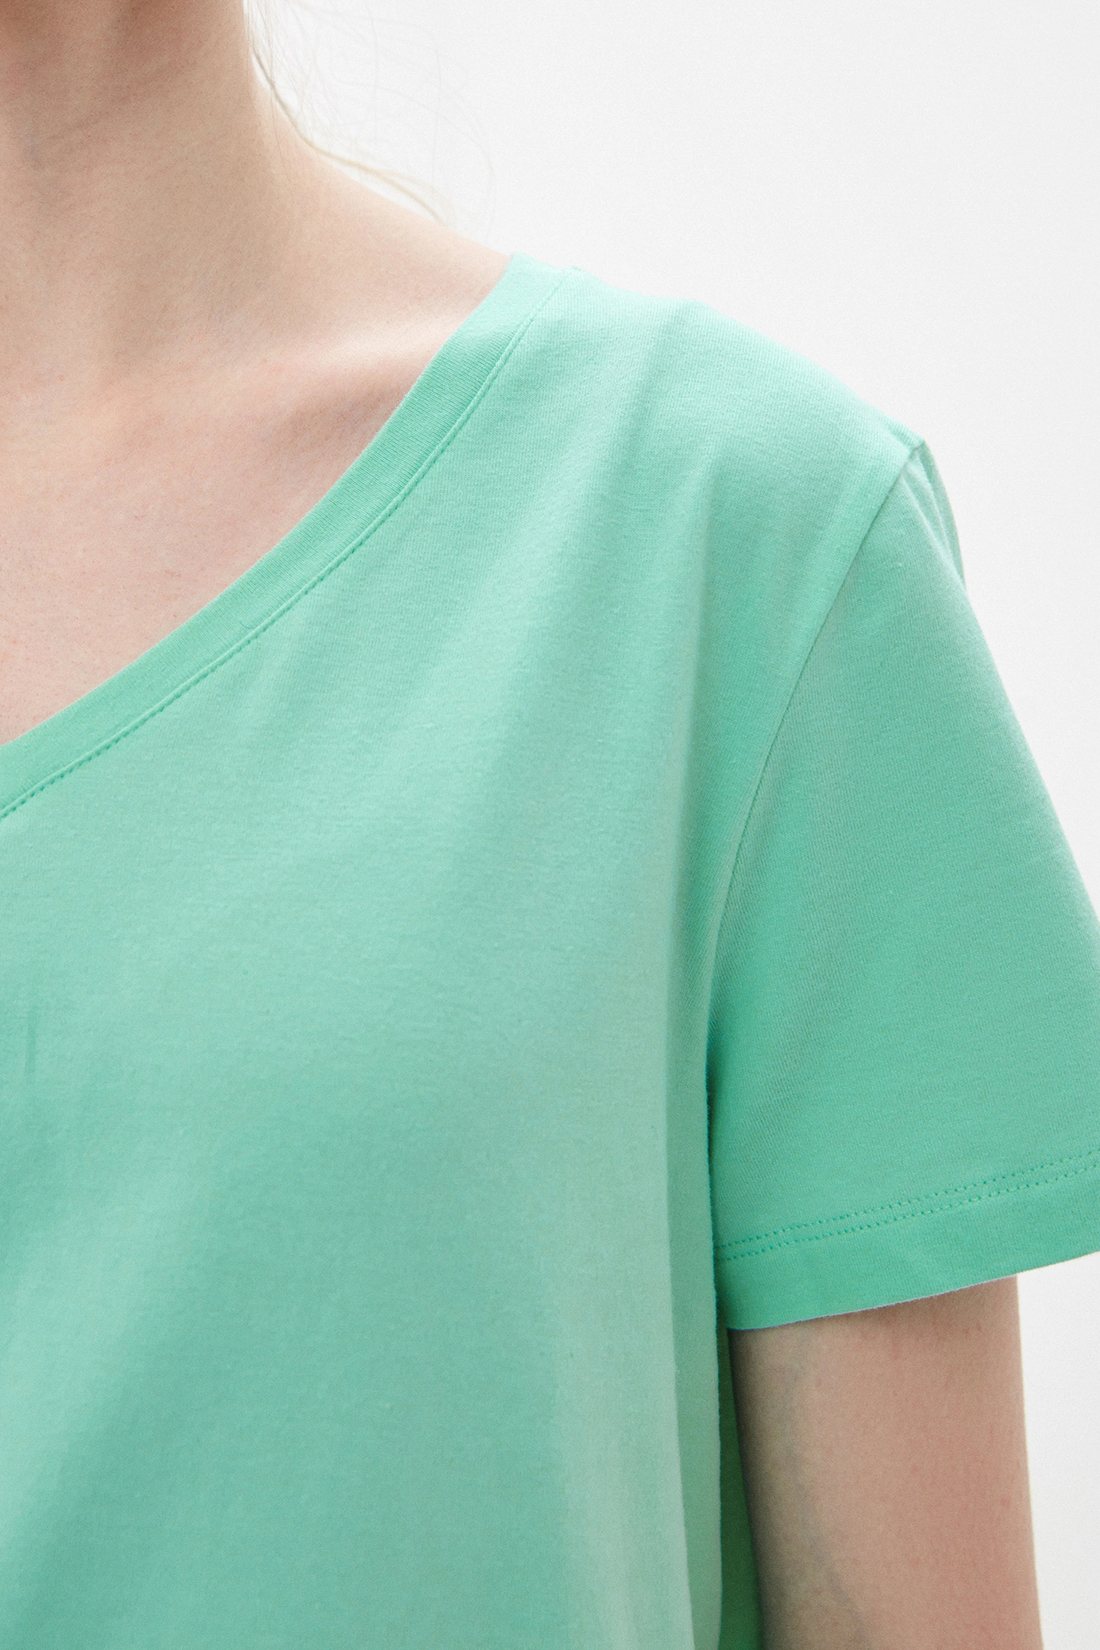 Базовая футболка (арт. baon B230202), размер XL, цвет зеленый Базовая футболка (арт. baon B230202) - фото 3